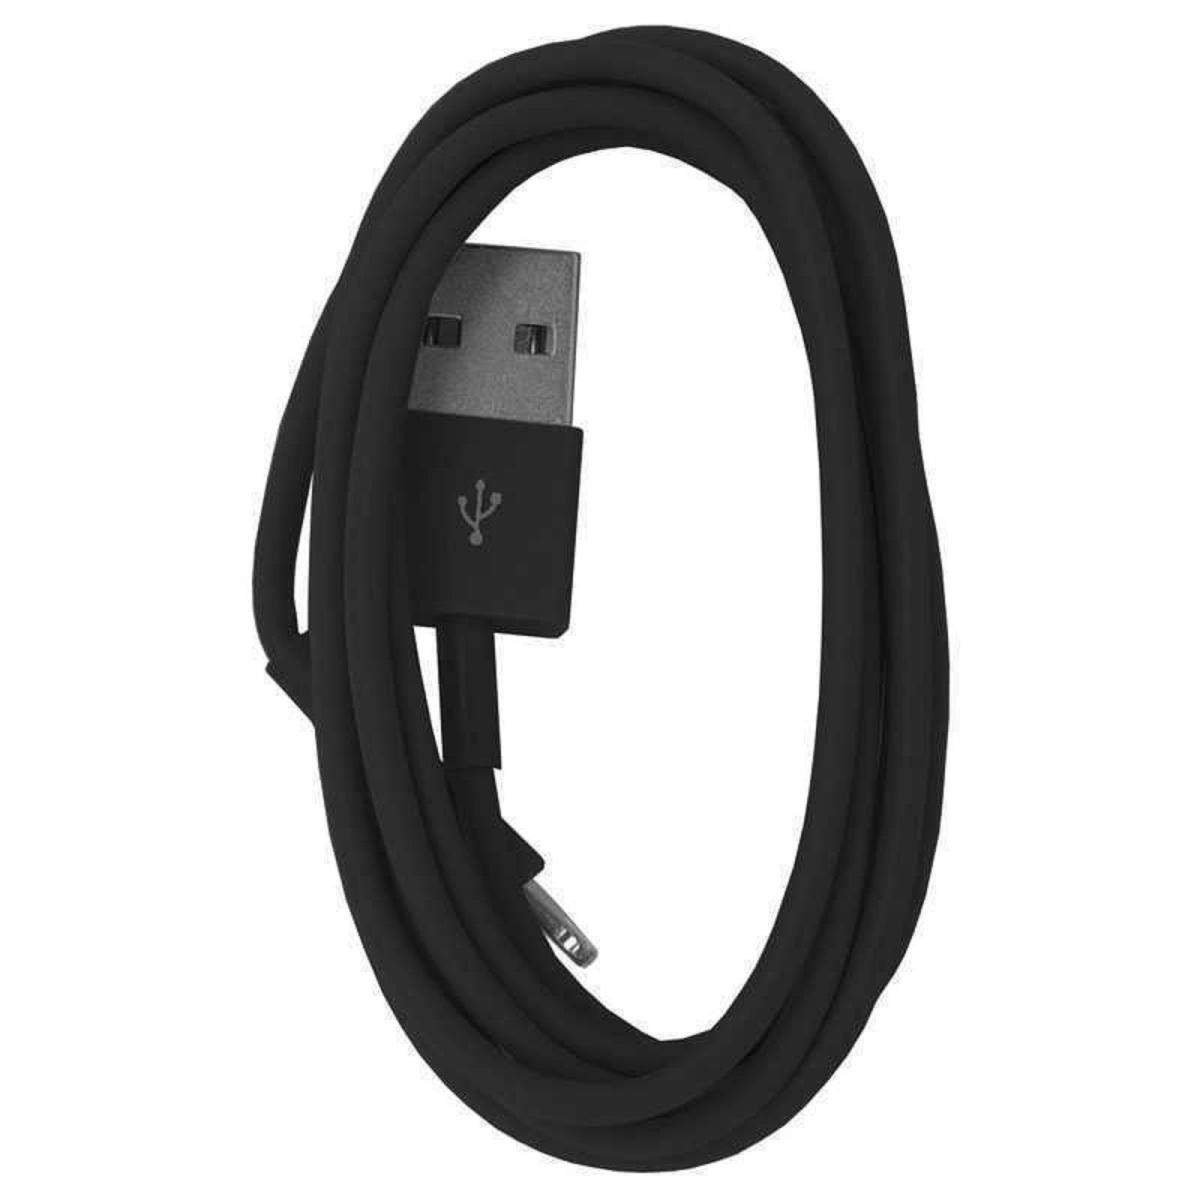 2x 2m USB 8 pin cable de carga de datos para iPhone de Apple iPad Lightning-Rosegold iPod